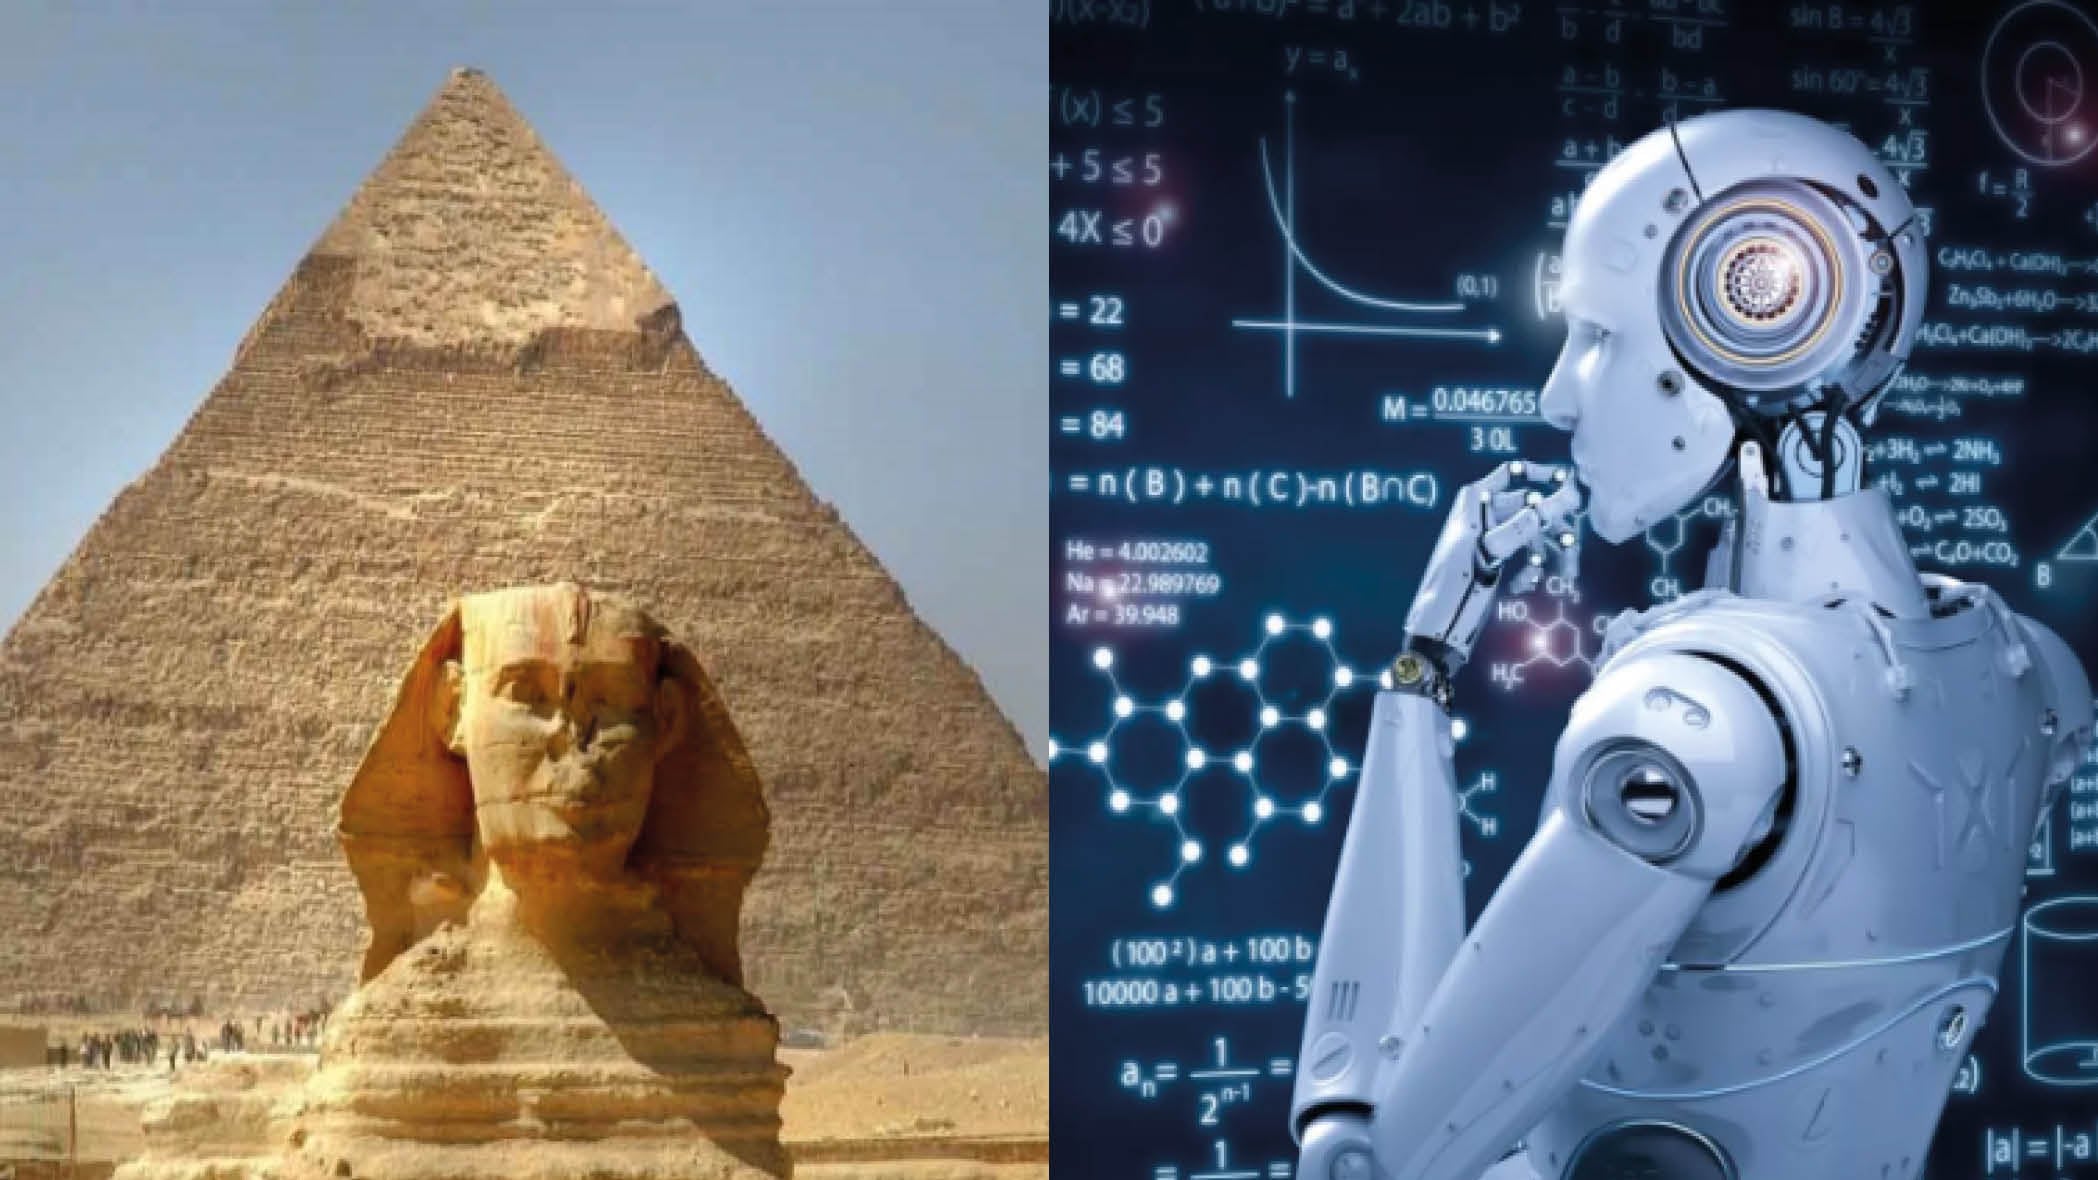 Así se vería el antiguo Egipto en la actualidad si nunca hubiera caído según la inteligencia artificial